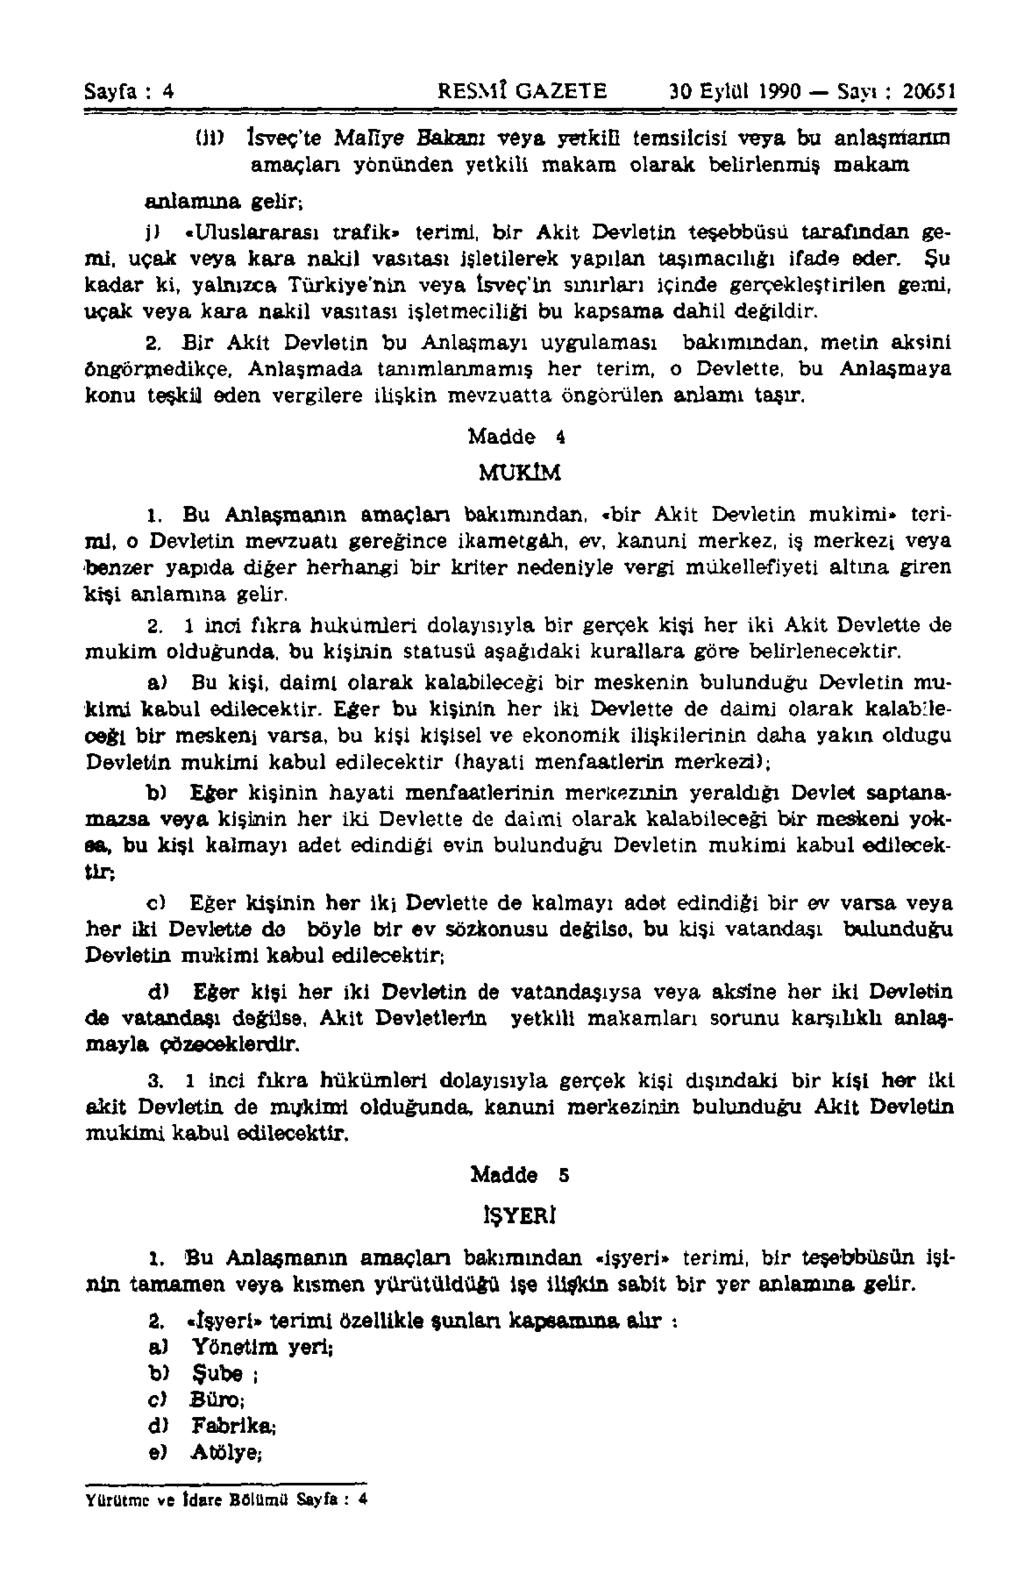 Sayfa : 4 RESMÎ GAZETE 30 Eylül 1990 Sayı : 20651 (11) İsveç'te Malîye Bakanı veya yetkili temsilcisi veya bu anlaşmanın amaçları yönünden yetkili makam olarak belirlenmiş makam anlamına gelir; j)